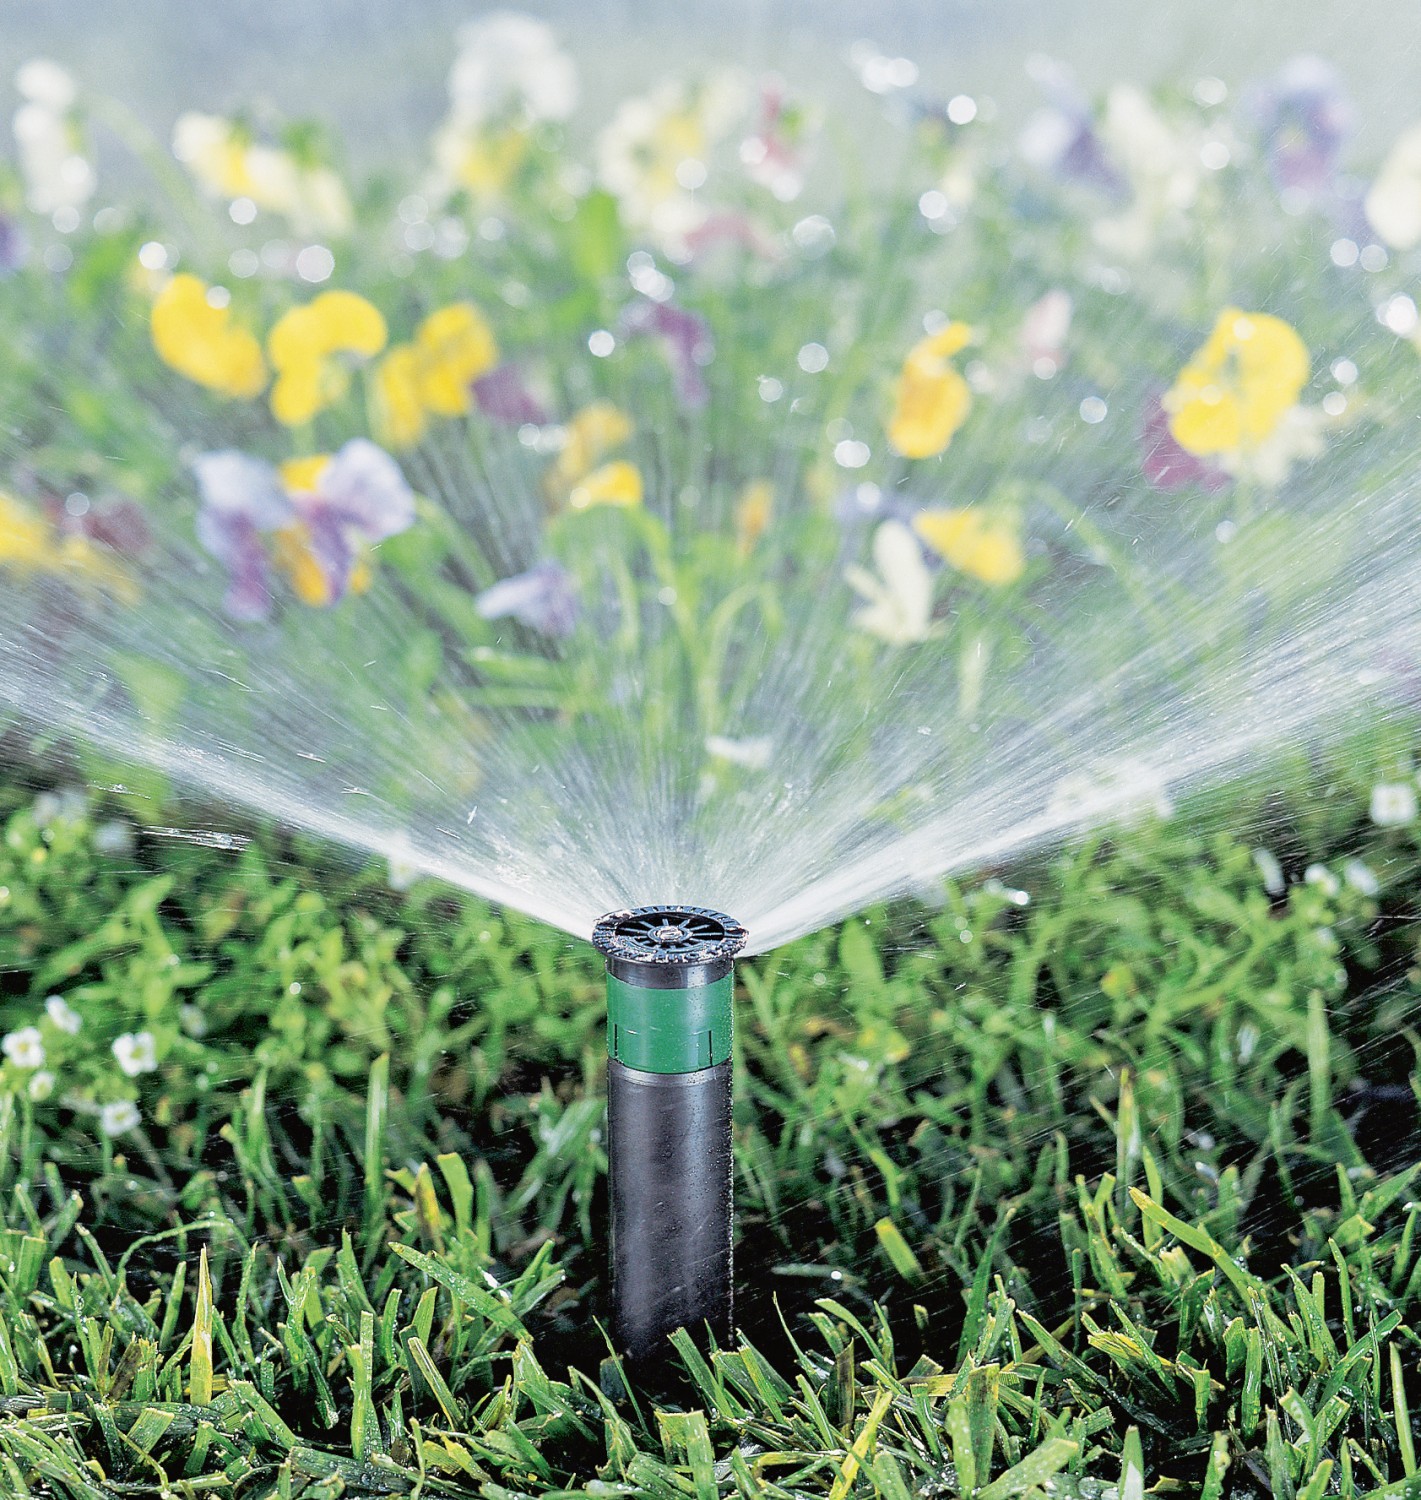 Produktvorstellung So wird auch der Garten smart: Bewässerungssysteme per App steuern - News, Bild 1